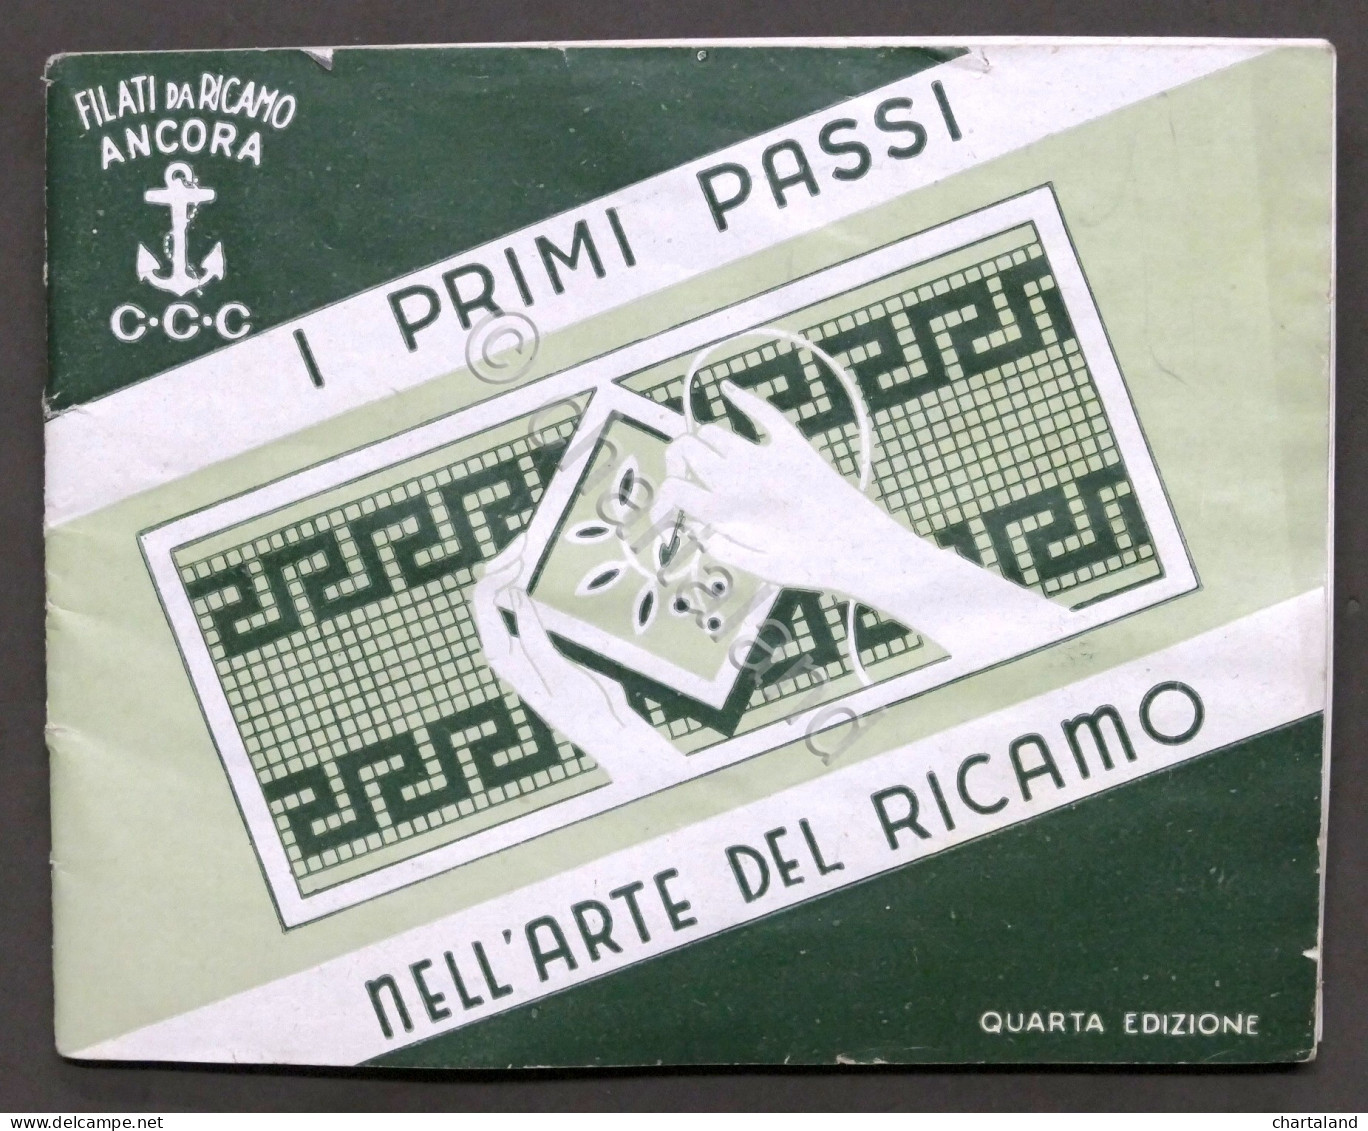 Filati Da Ricamo Ancora - I Primi Passi Nell'arte Del Ricamo - 1960 Ca. - Sonstige & Ohne Zuordnung